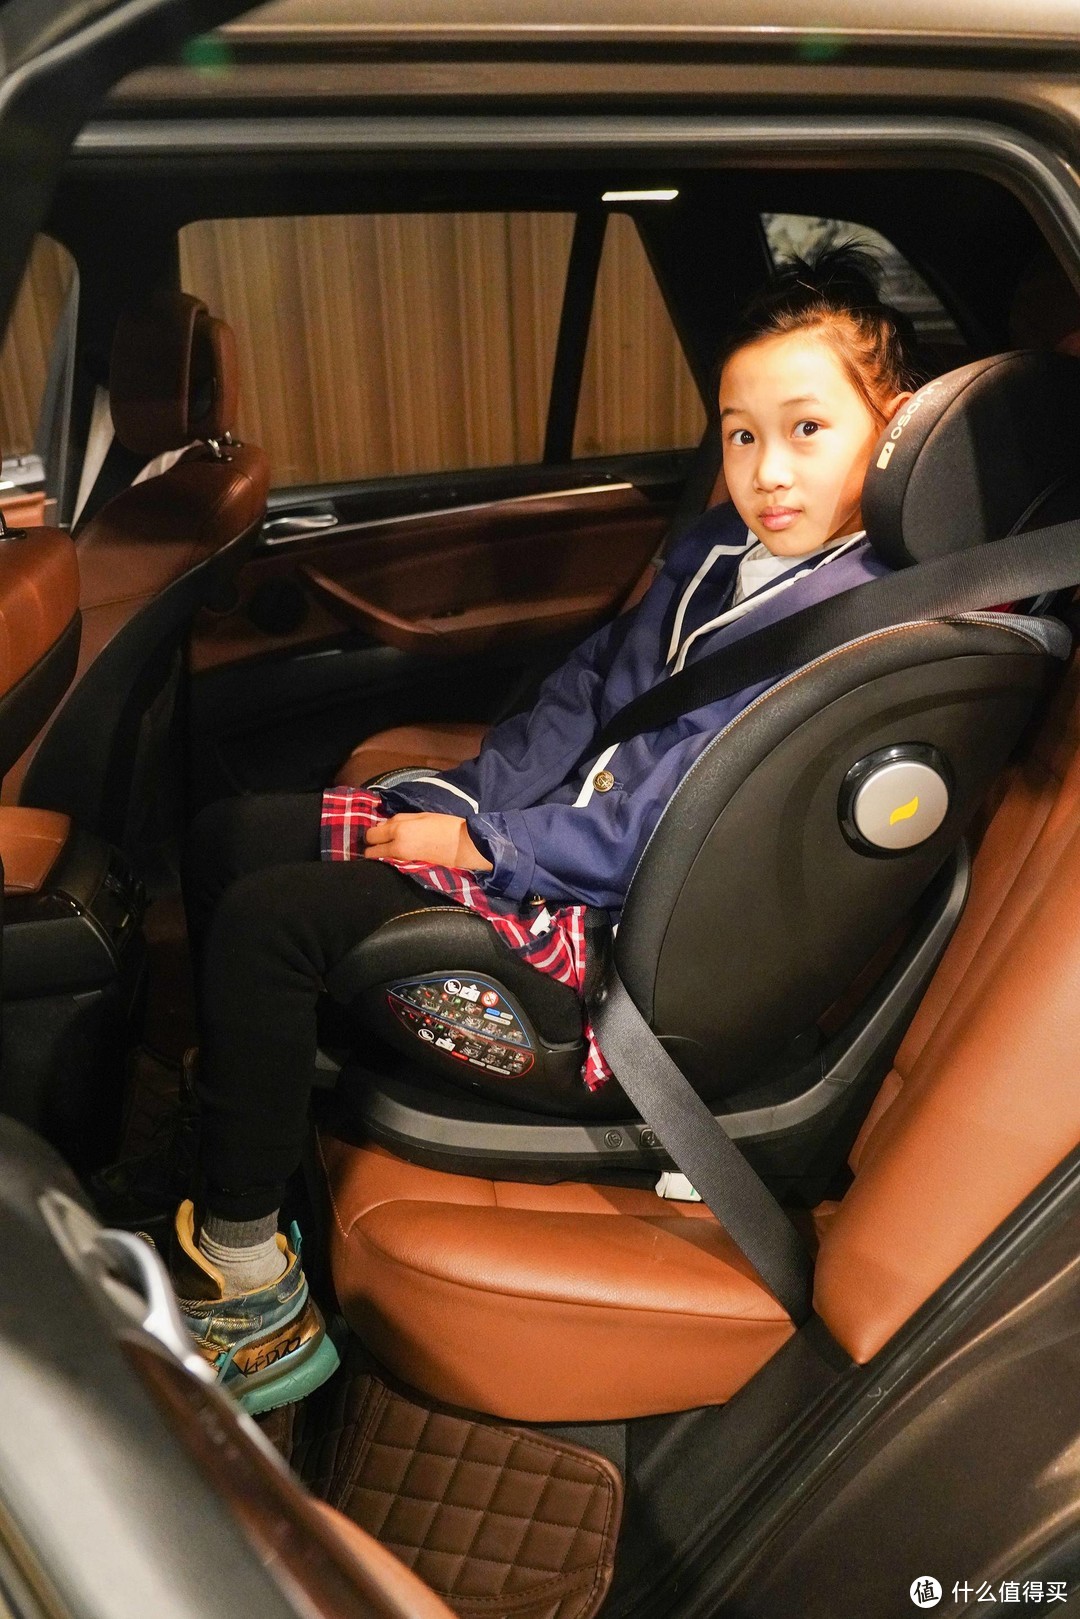 给小外甥的最佳保护---KIN360Pro评测+安全座椅选购指南